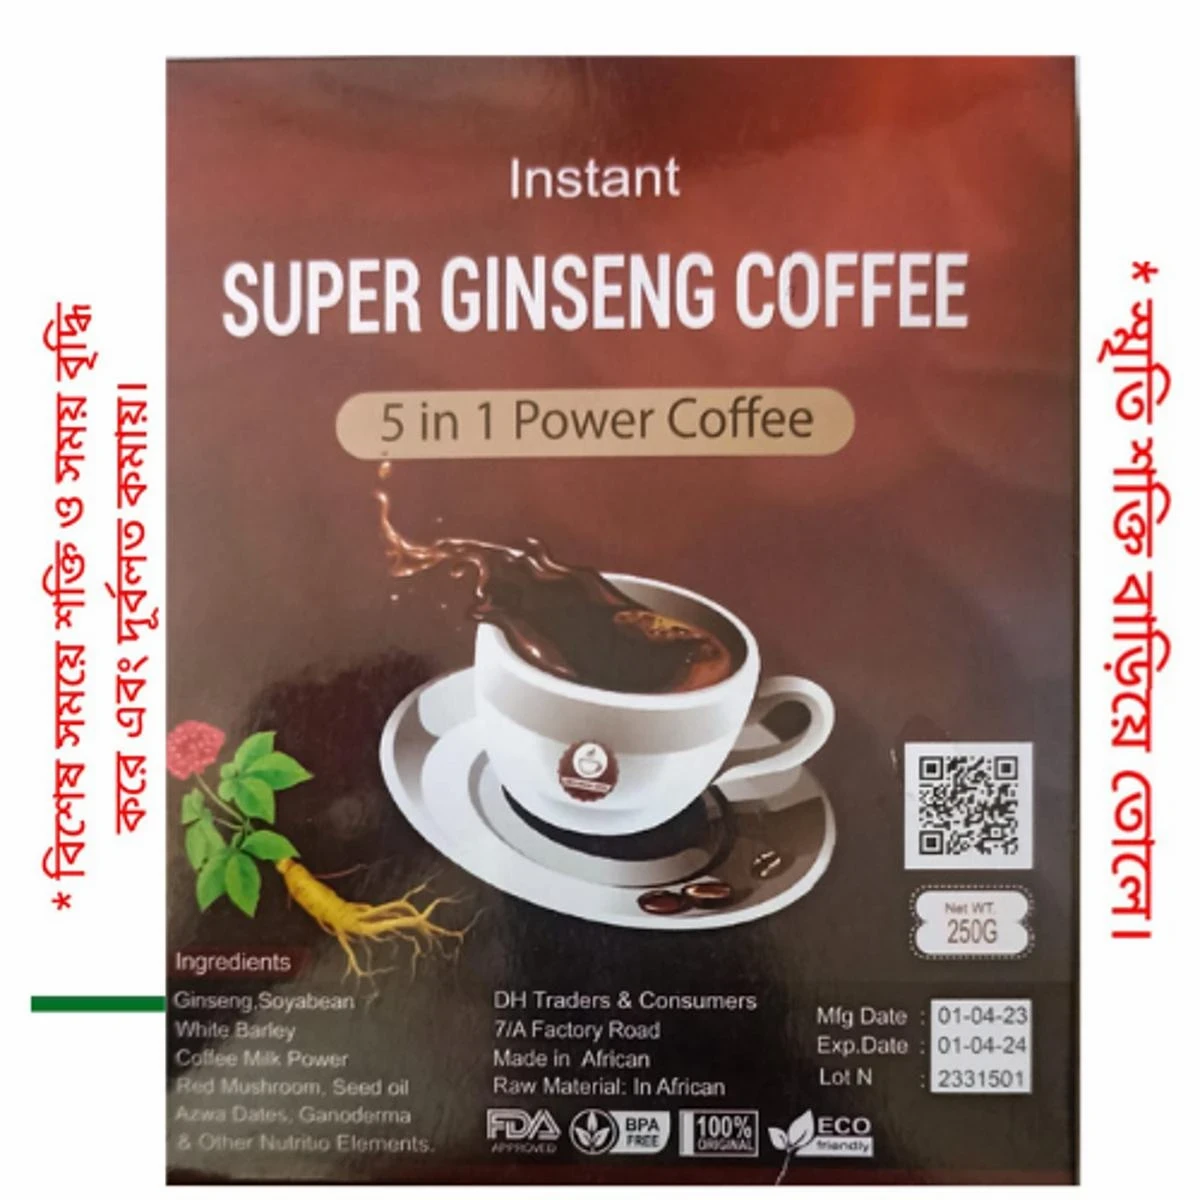 Super Ginseeng Coffee